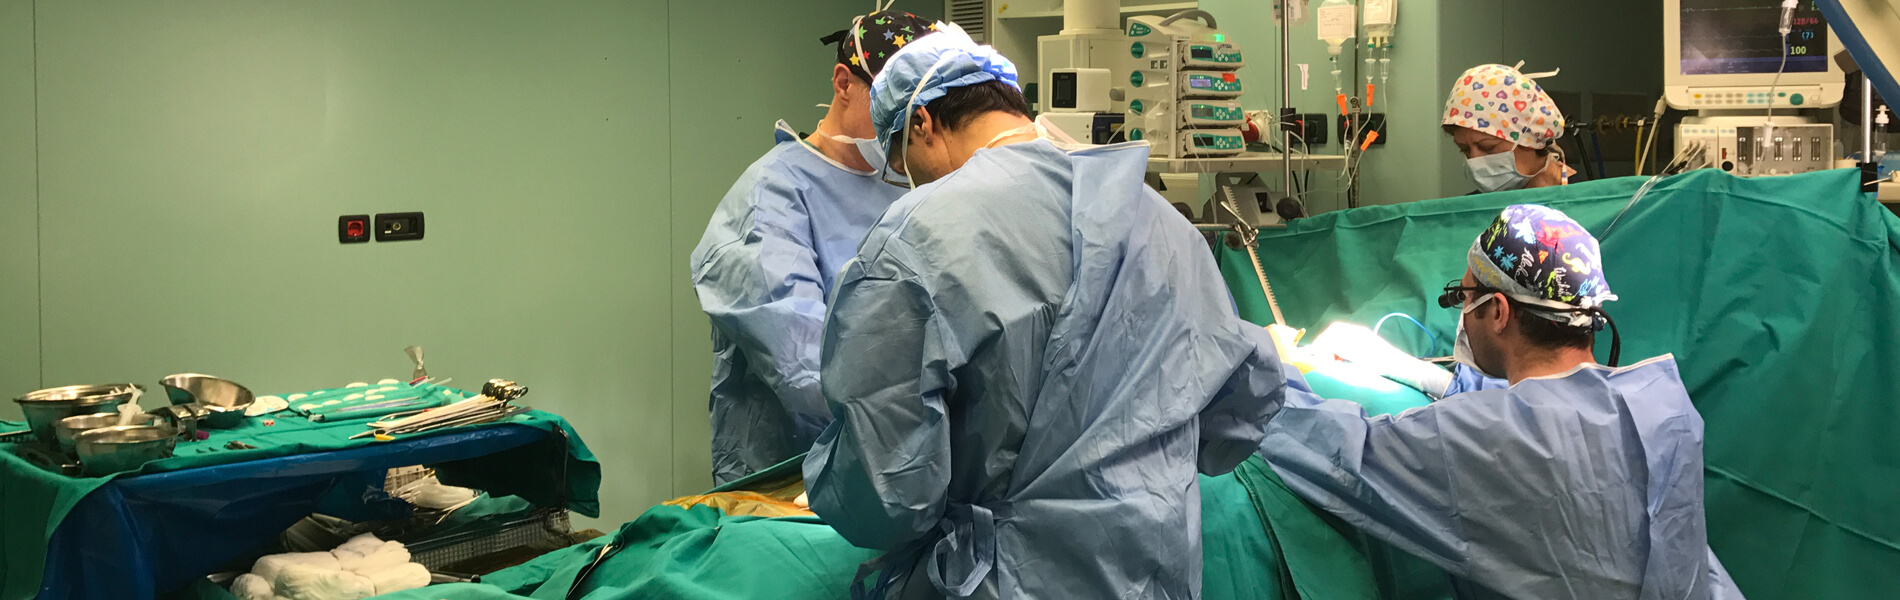 Χειρουργική των στεφανιαίων αγγείων ακόμα και περιστατικών υψηλού κινδύνου με απόλυτη επιτυχία και ακρίβεια